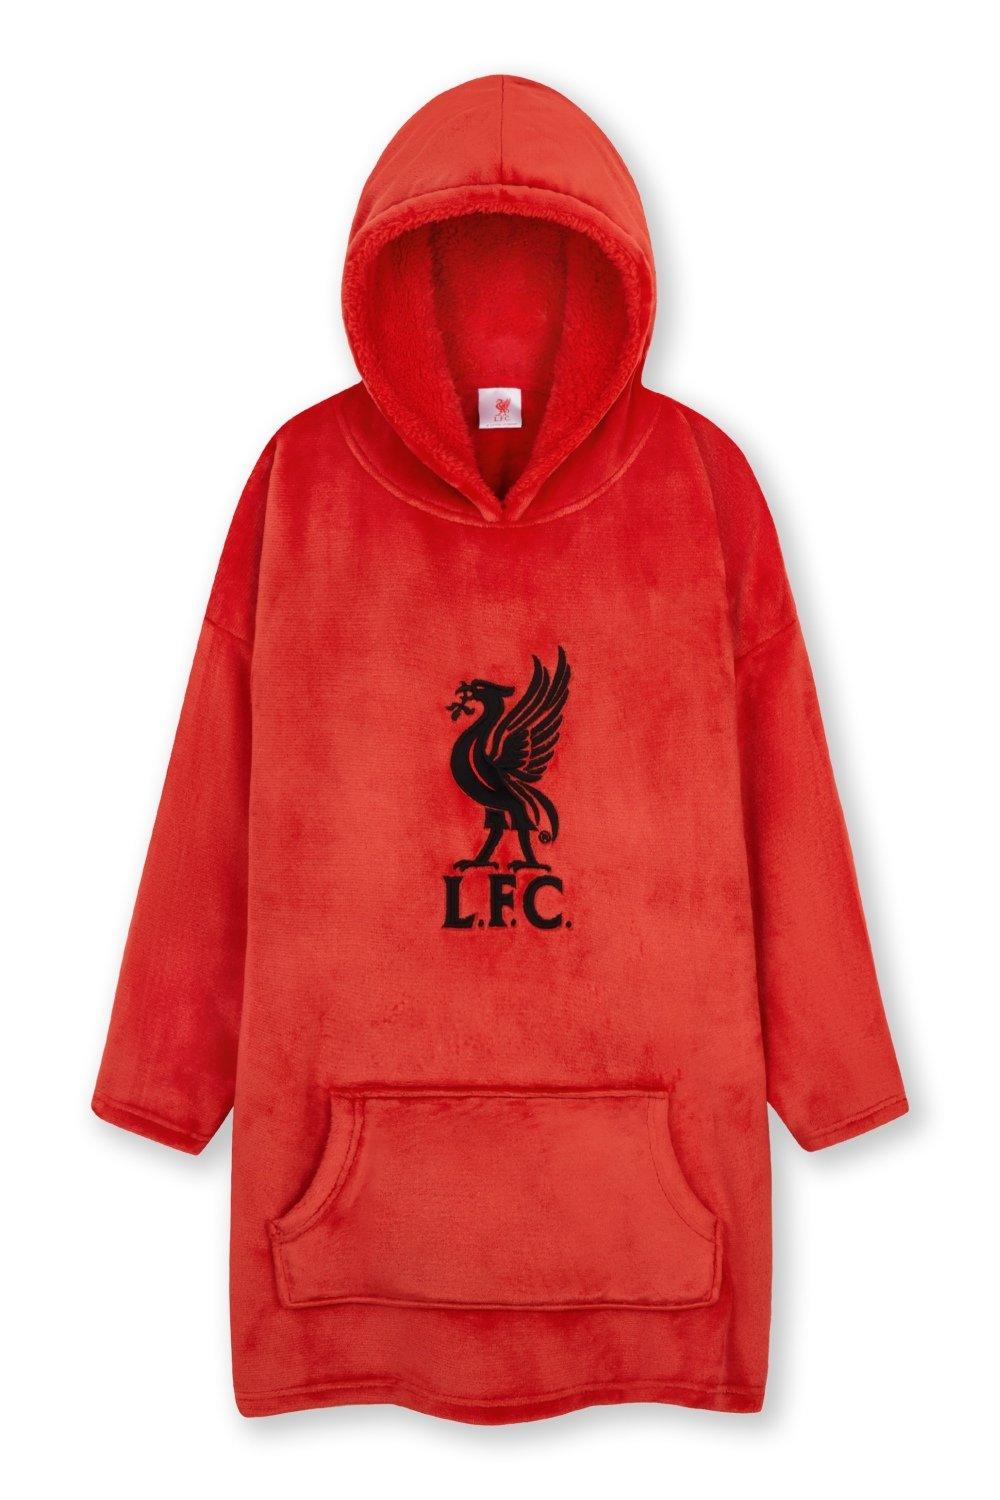 Объемное пончо с капюшоном Liverpool FC, красный